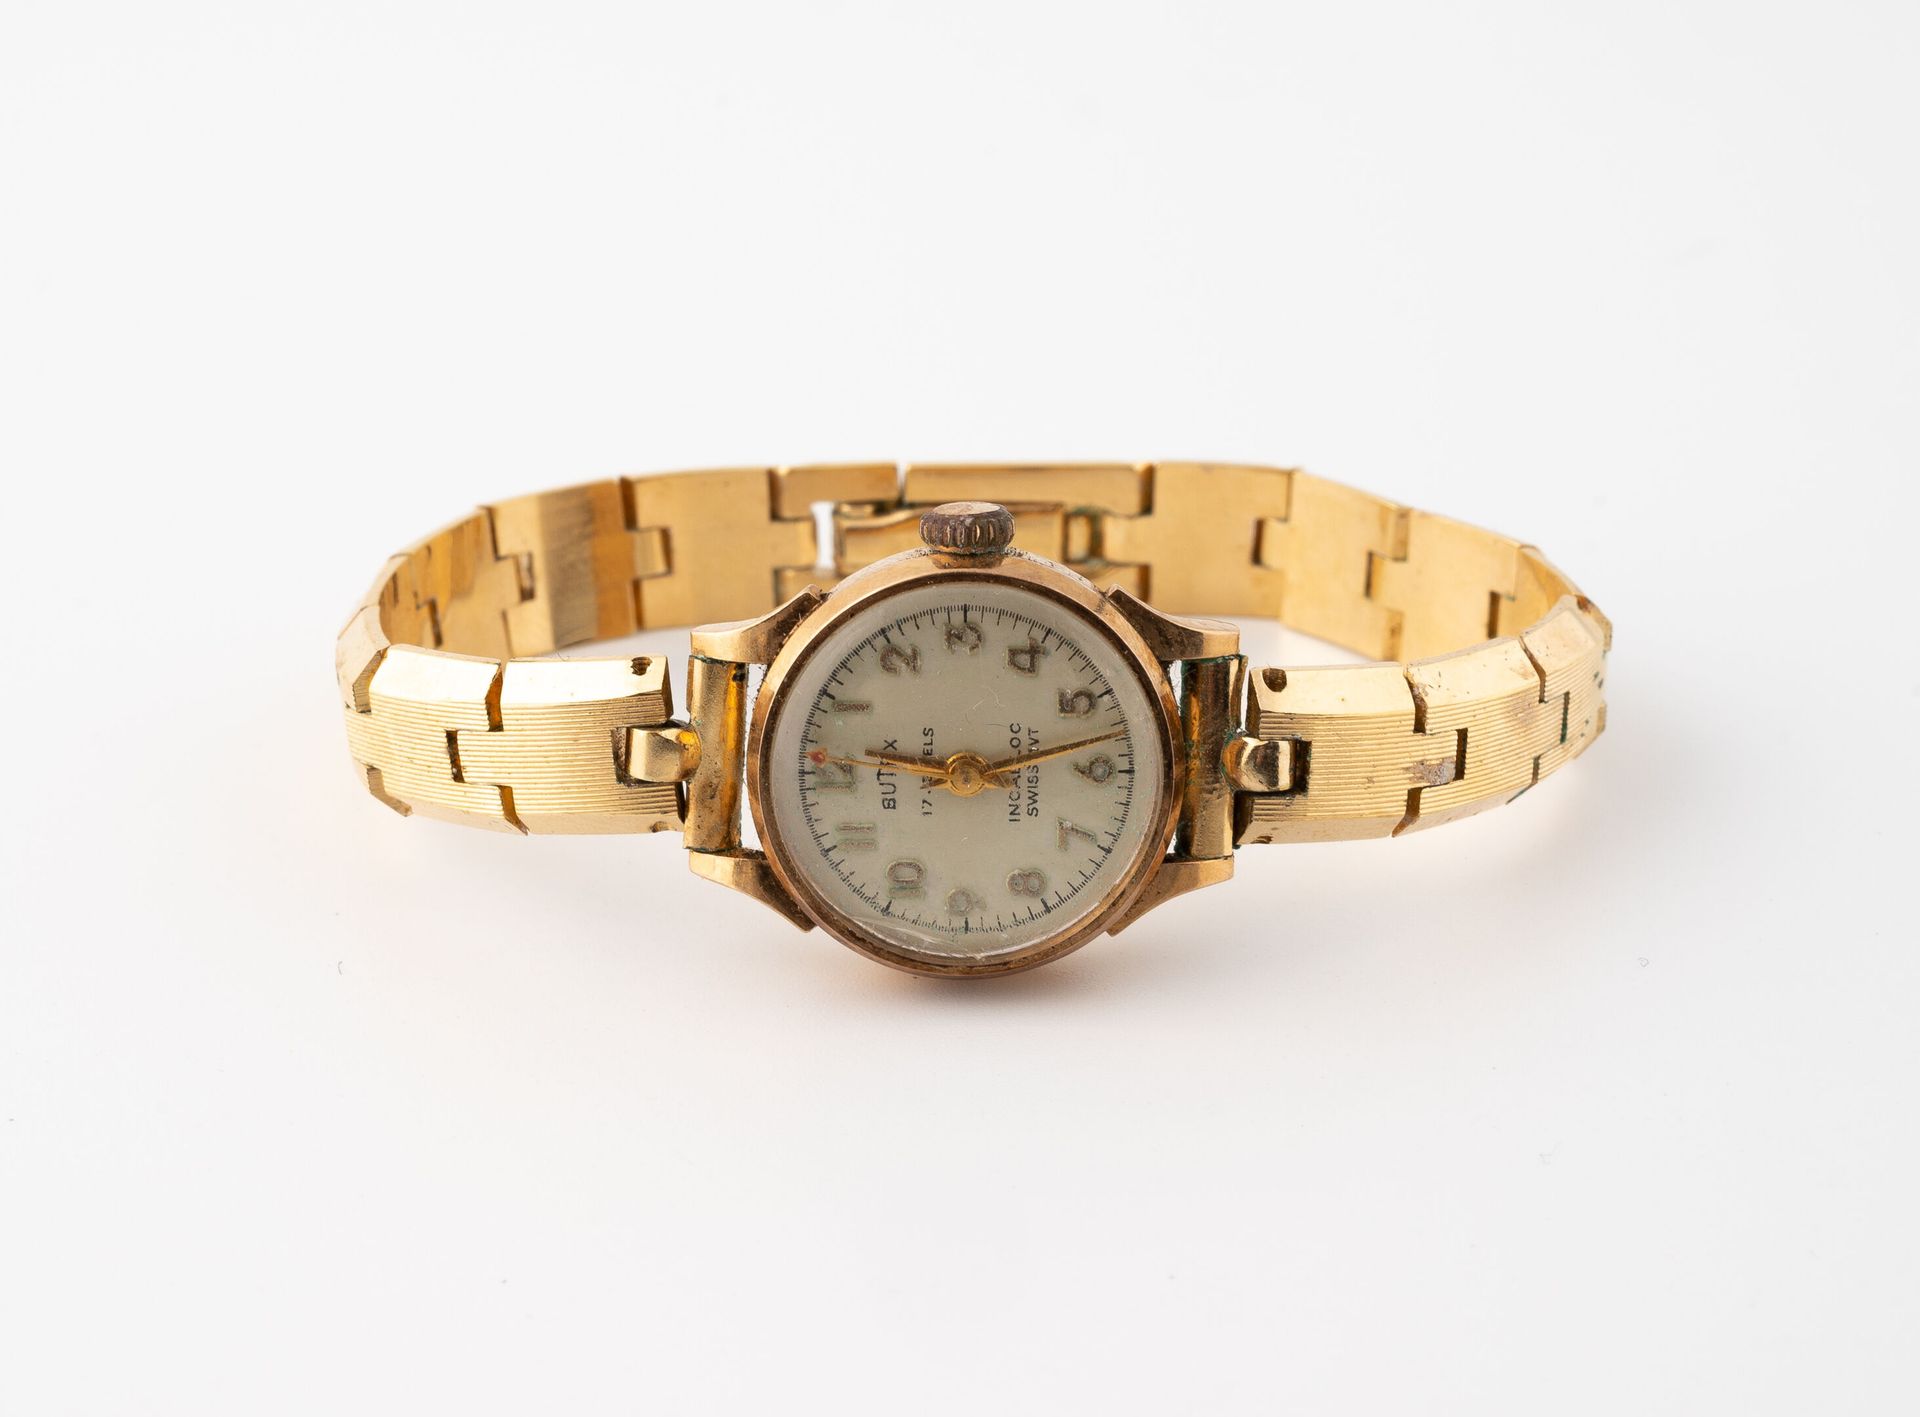 BUTEX 女士腕表。
黄金（750）圆形表壳。
鎏金表盘，签名与应用罗马数字的小时。
夹式表背。
镀金铰接式链节表带。 
总重量：25.1克。
表壳尺寸：20&hellip;